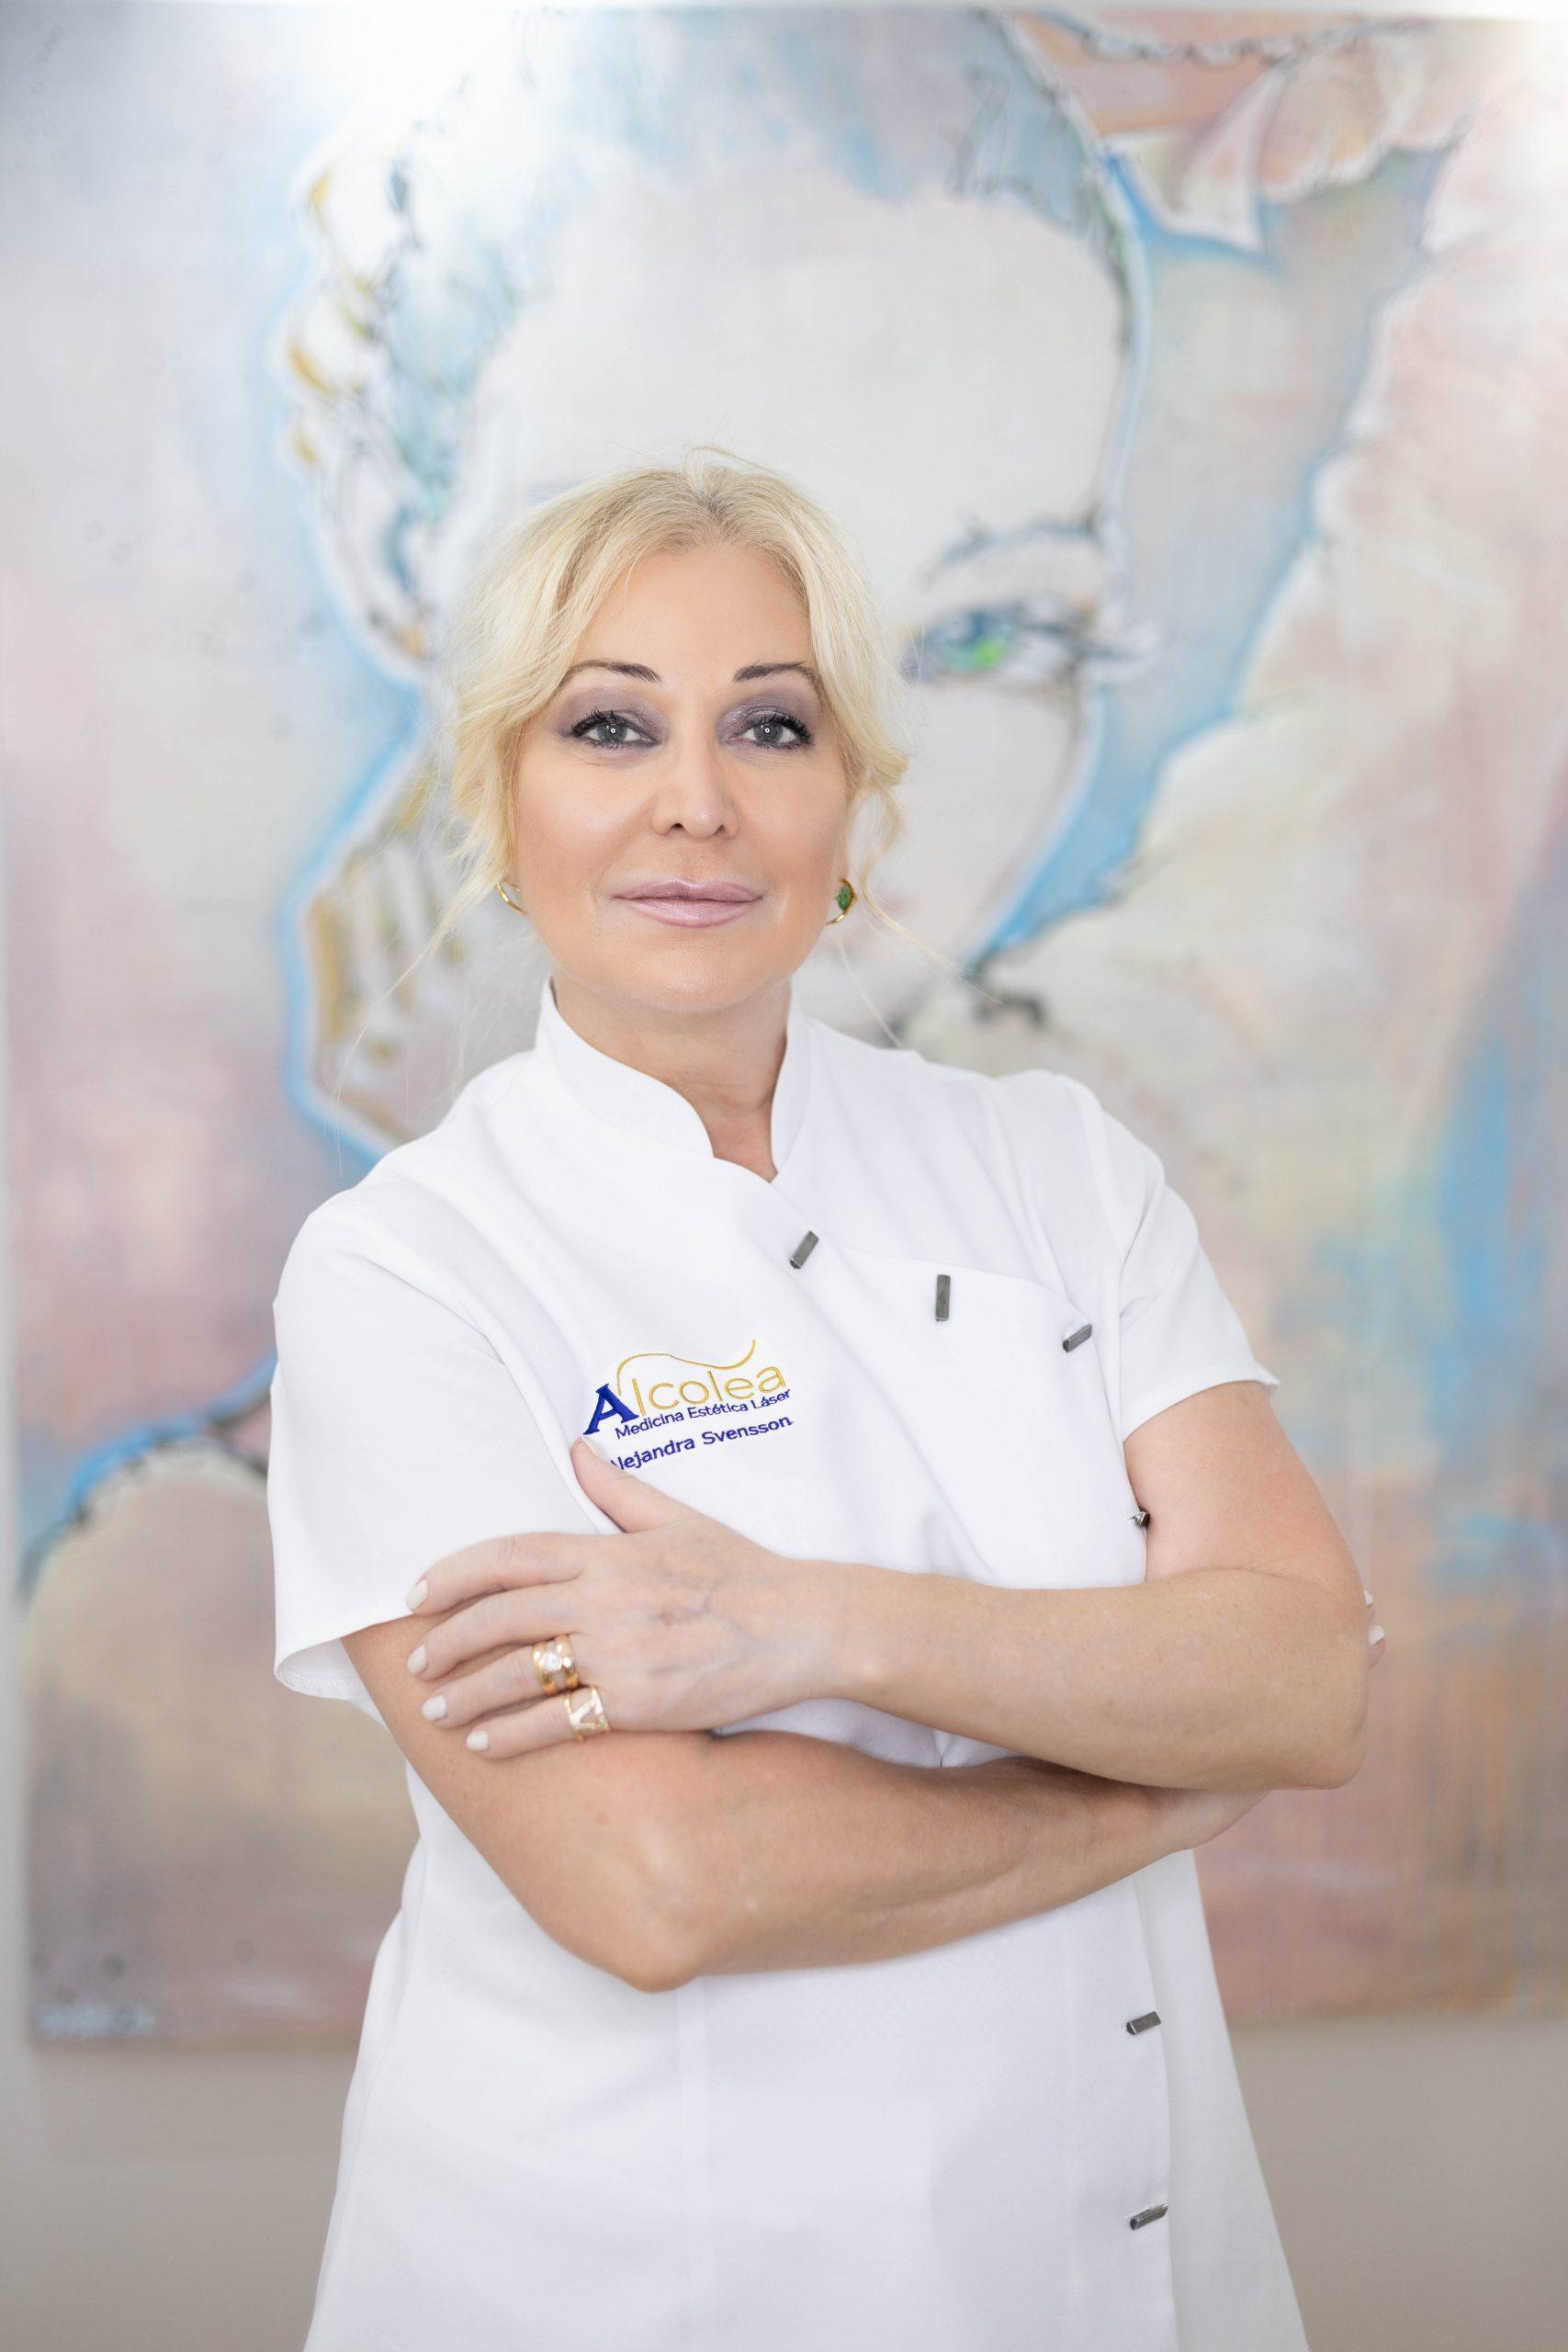 Alejandra Svensson es responsable en Clínica Alcolea